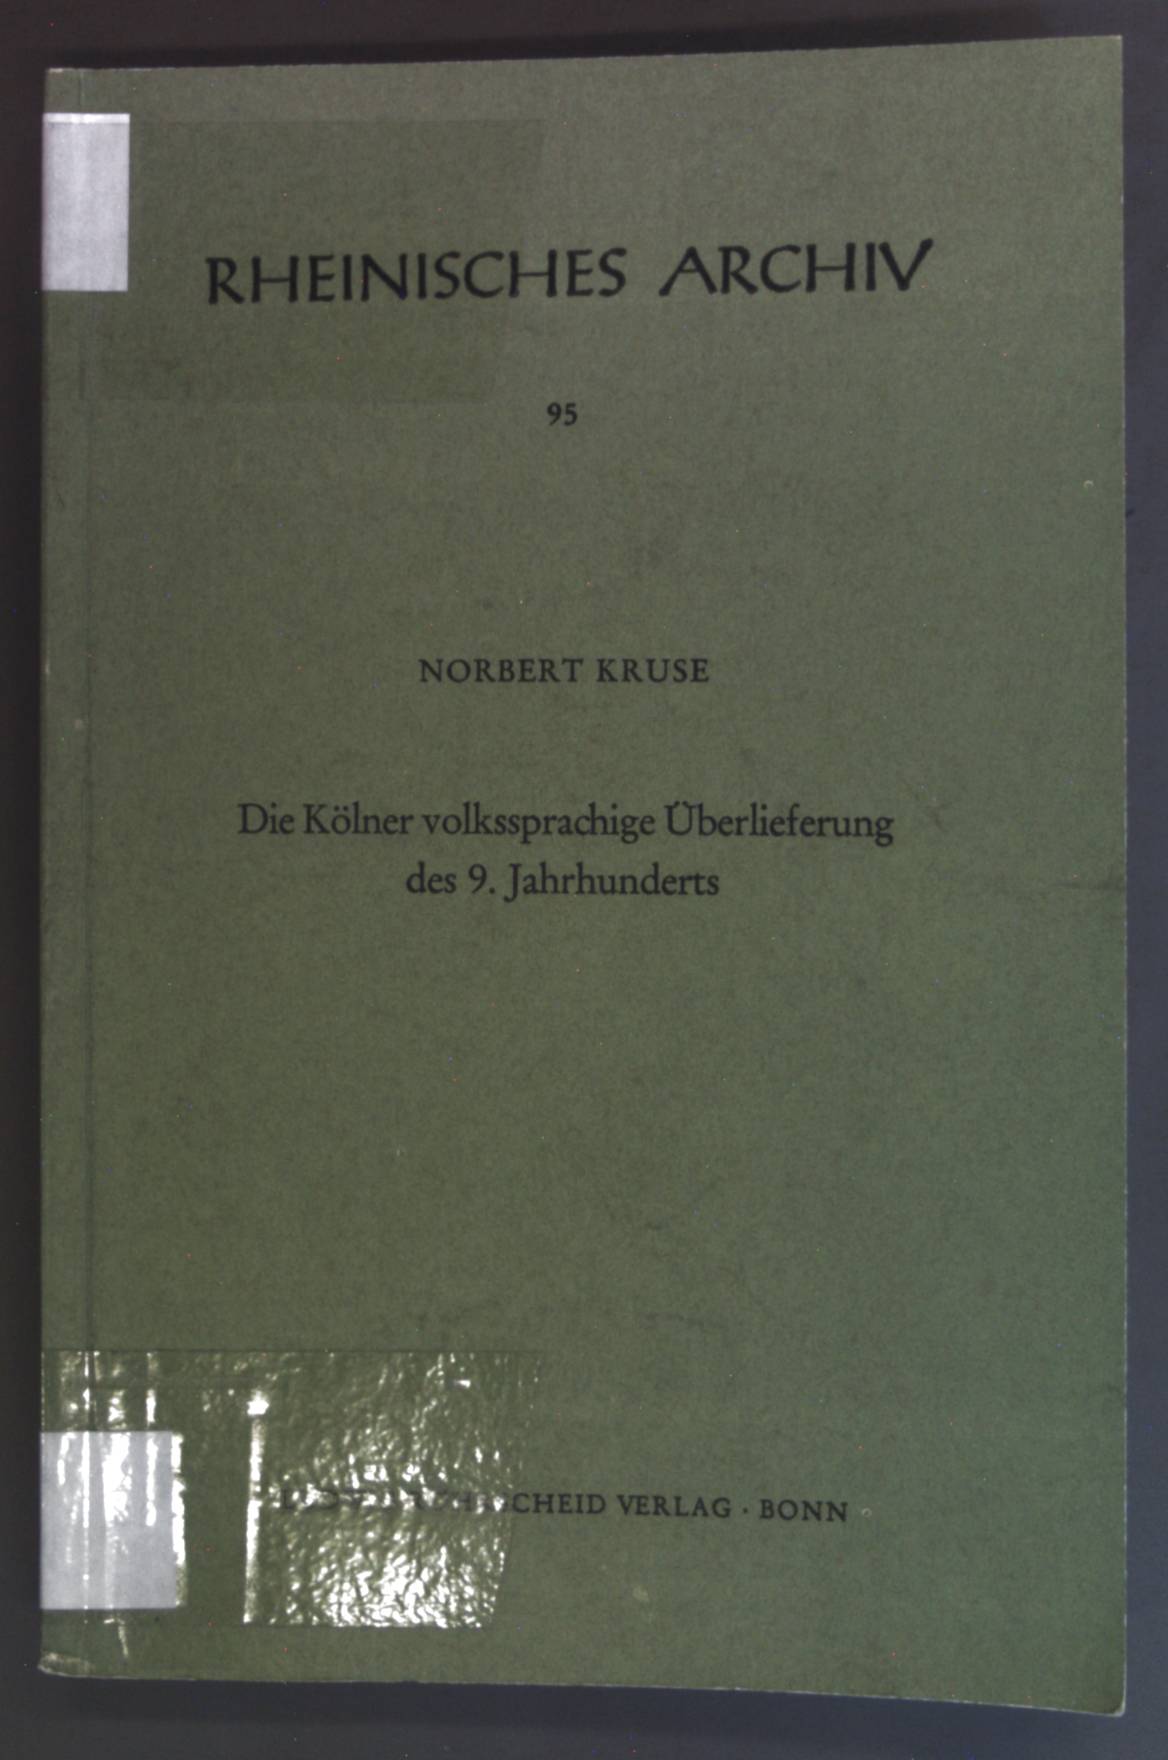 Die Kölner volkssprachige Überlieferung des 9. Jahrhunderts. Rheinisches Archiv ; 95. - Kruse, Norbert